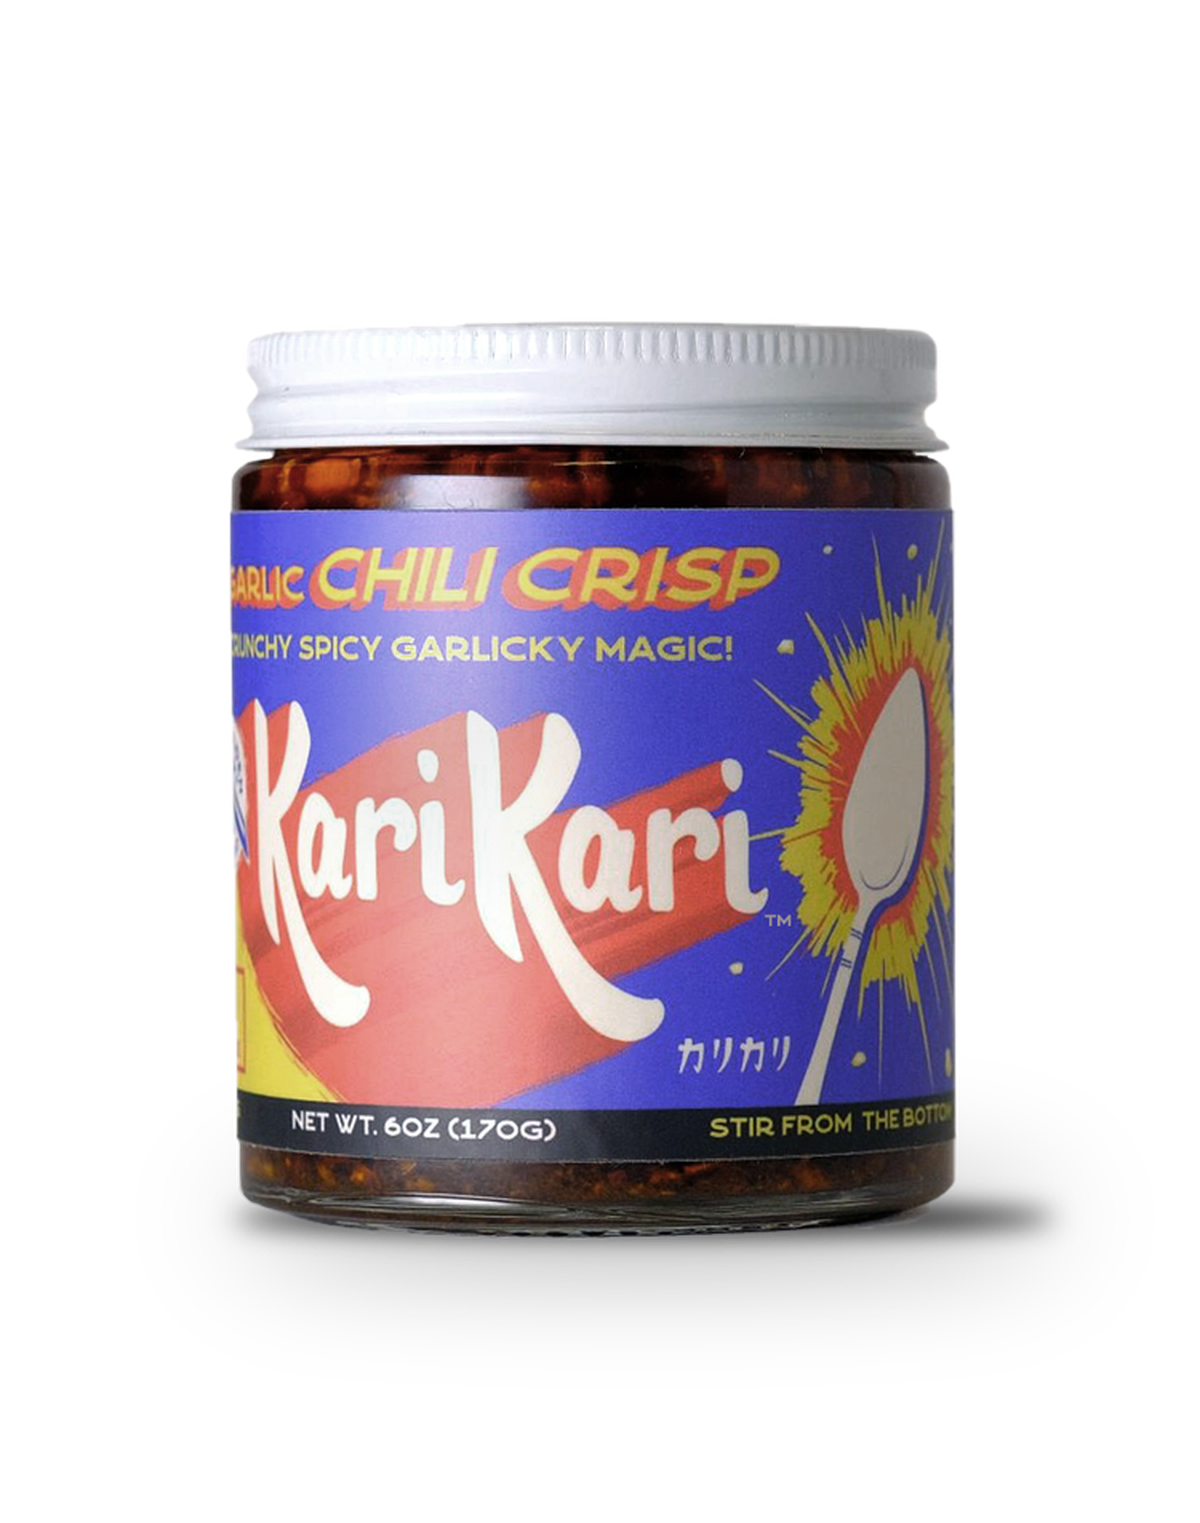 KariKari chili crisp was launched in Seattle just before the pandemic.  (KariKari)